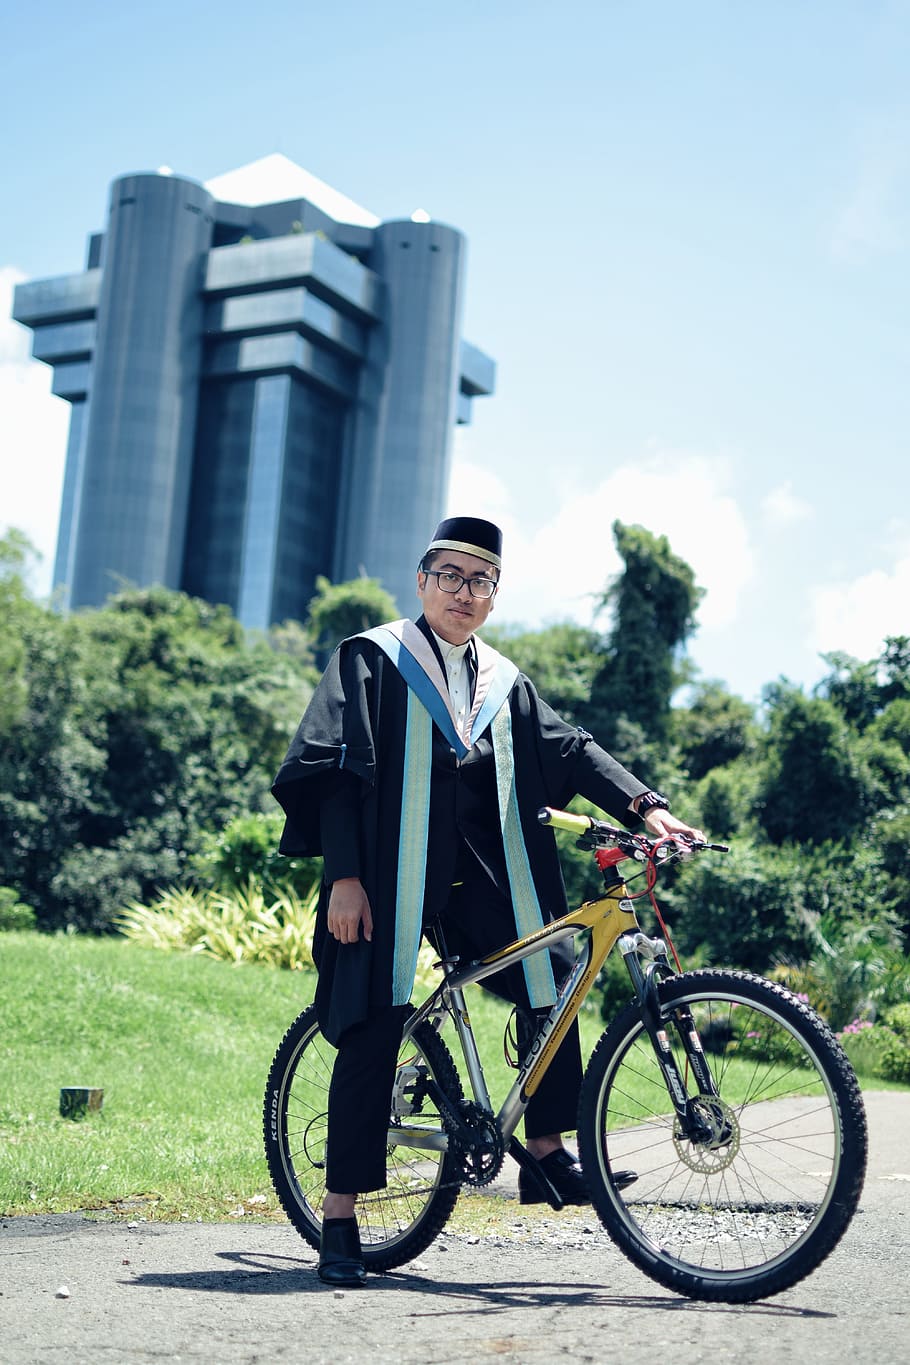 graduación, bicicleta, graduado, licenciatura, una persona, longitud completa, hombres, transporte, personas reales, día